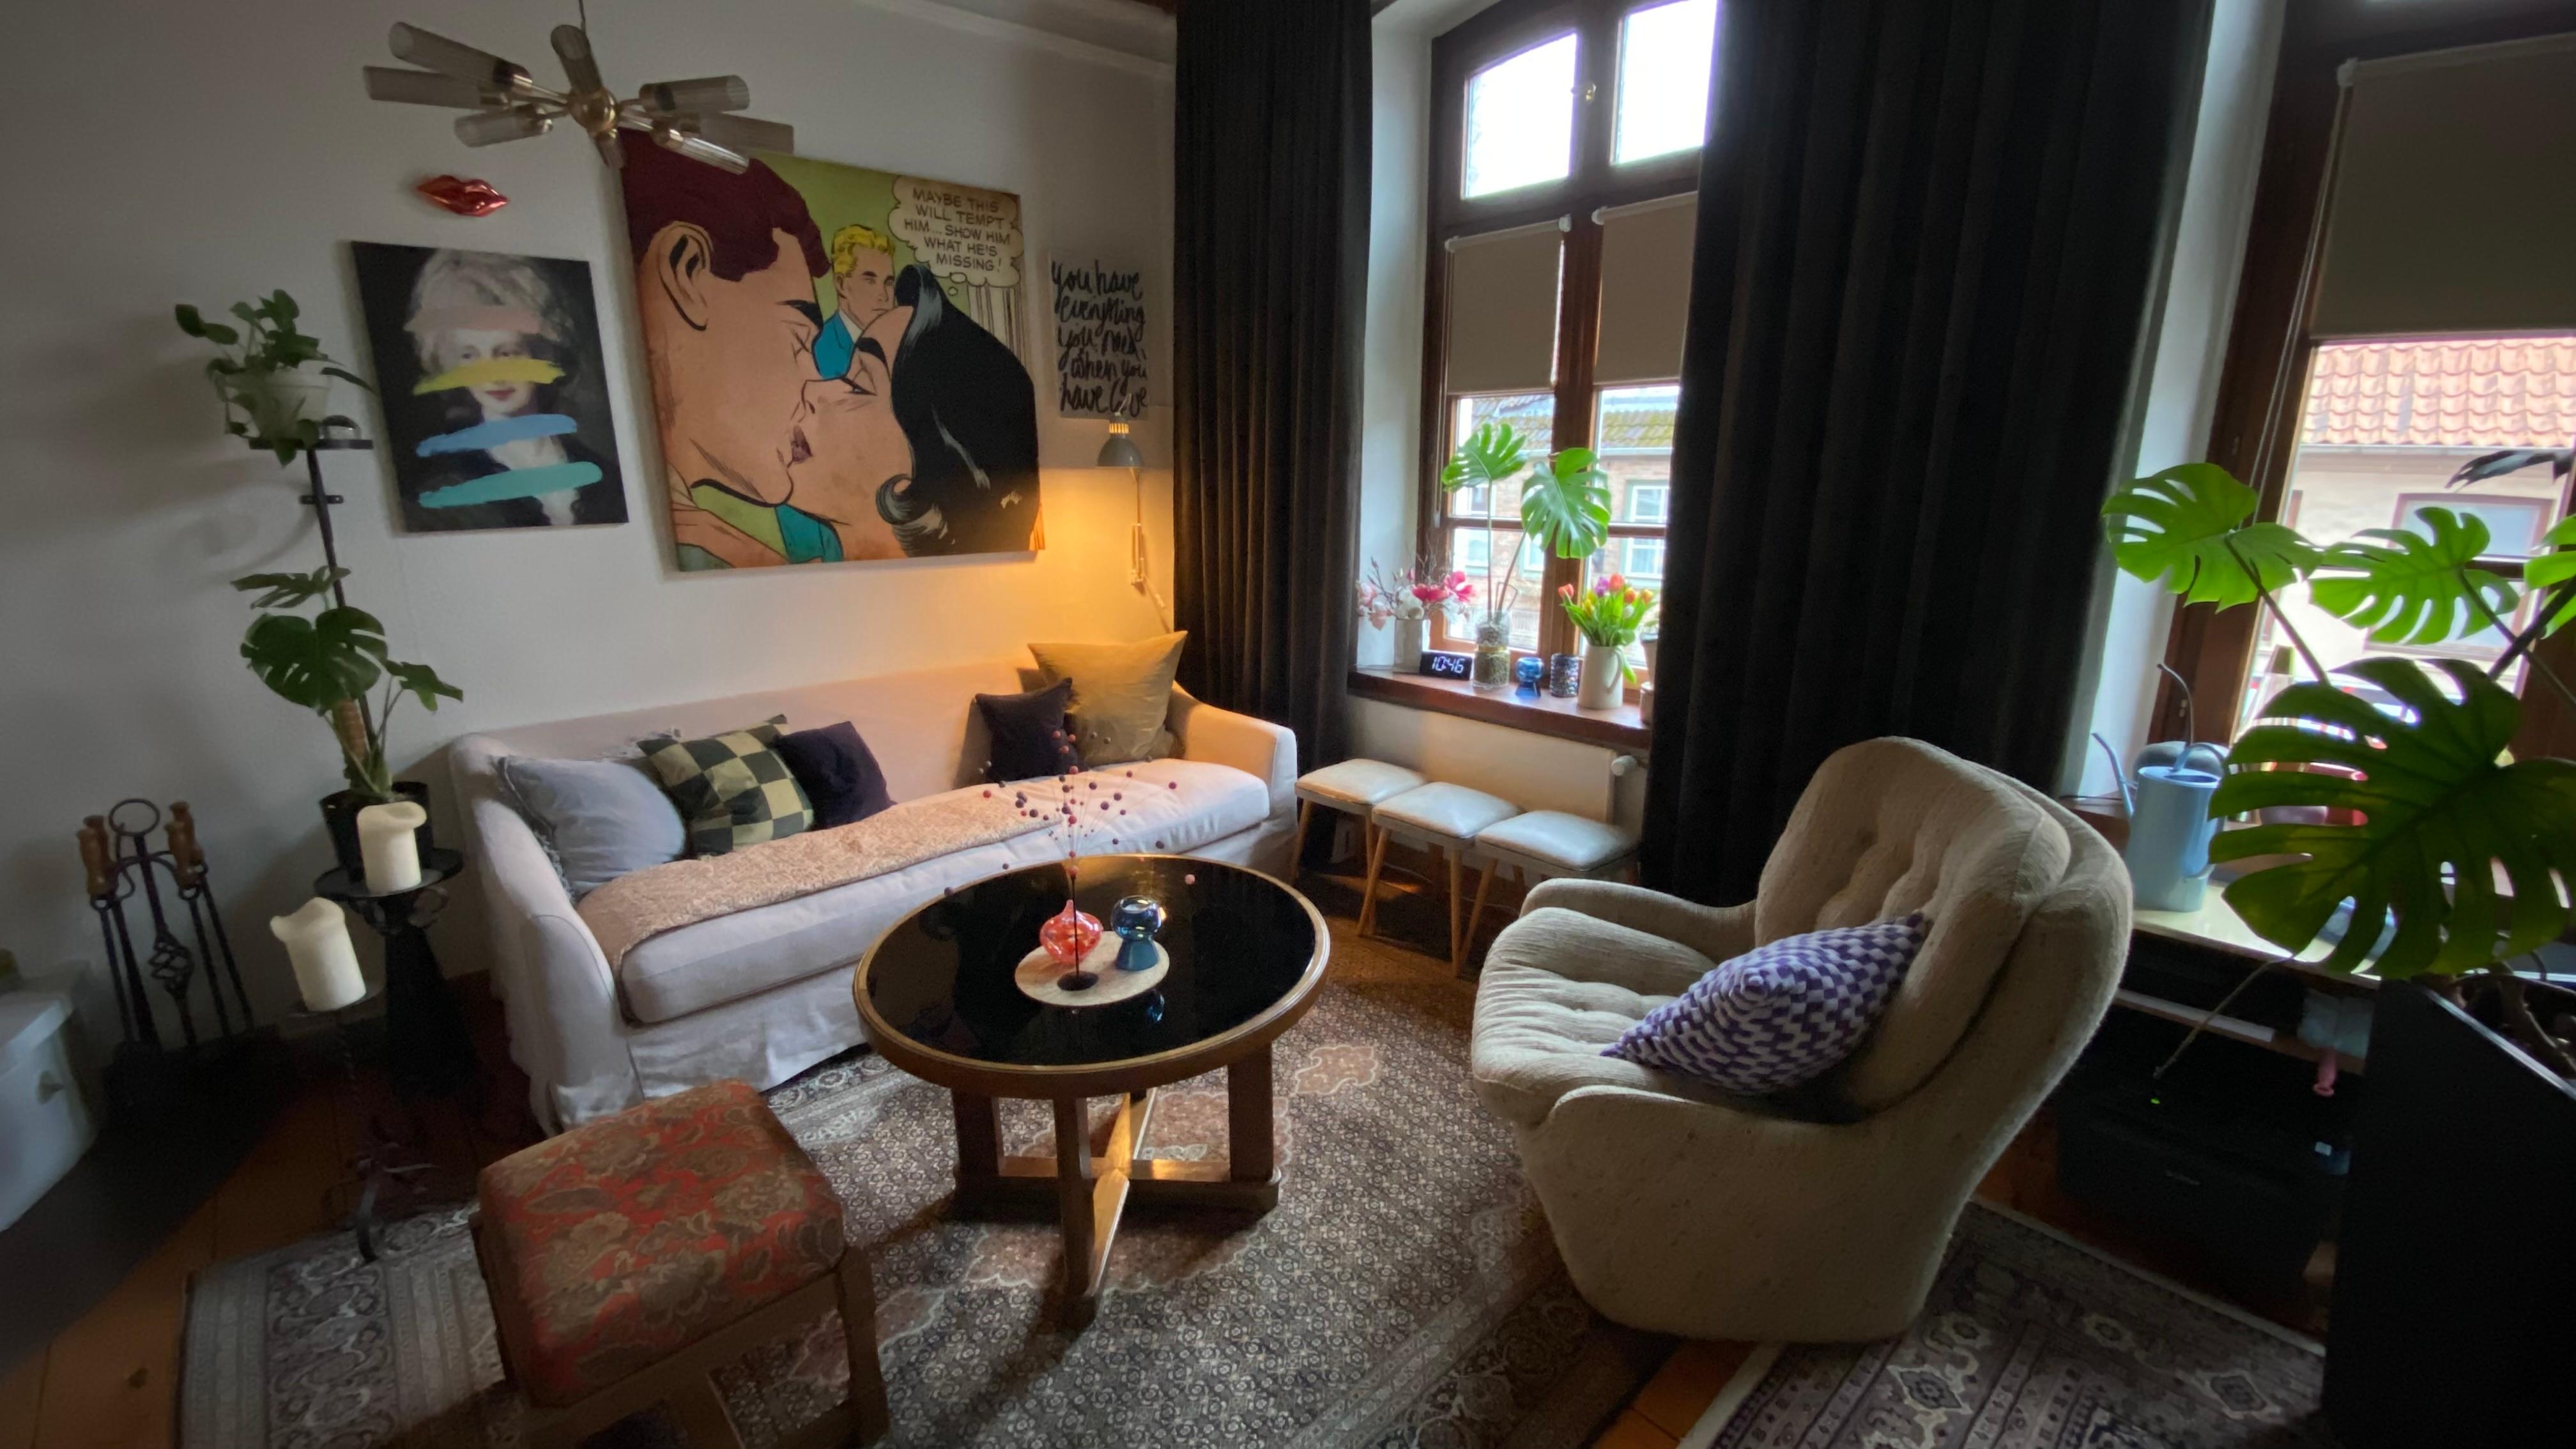 #vintagemeetsikea ist in der neuen gemütlichen Sofa-Ecke wohl aktuell das Motto. Ich lieb die Farben. Hab einen schönen Freitag 💋 